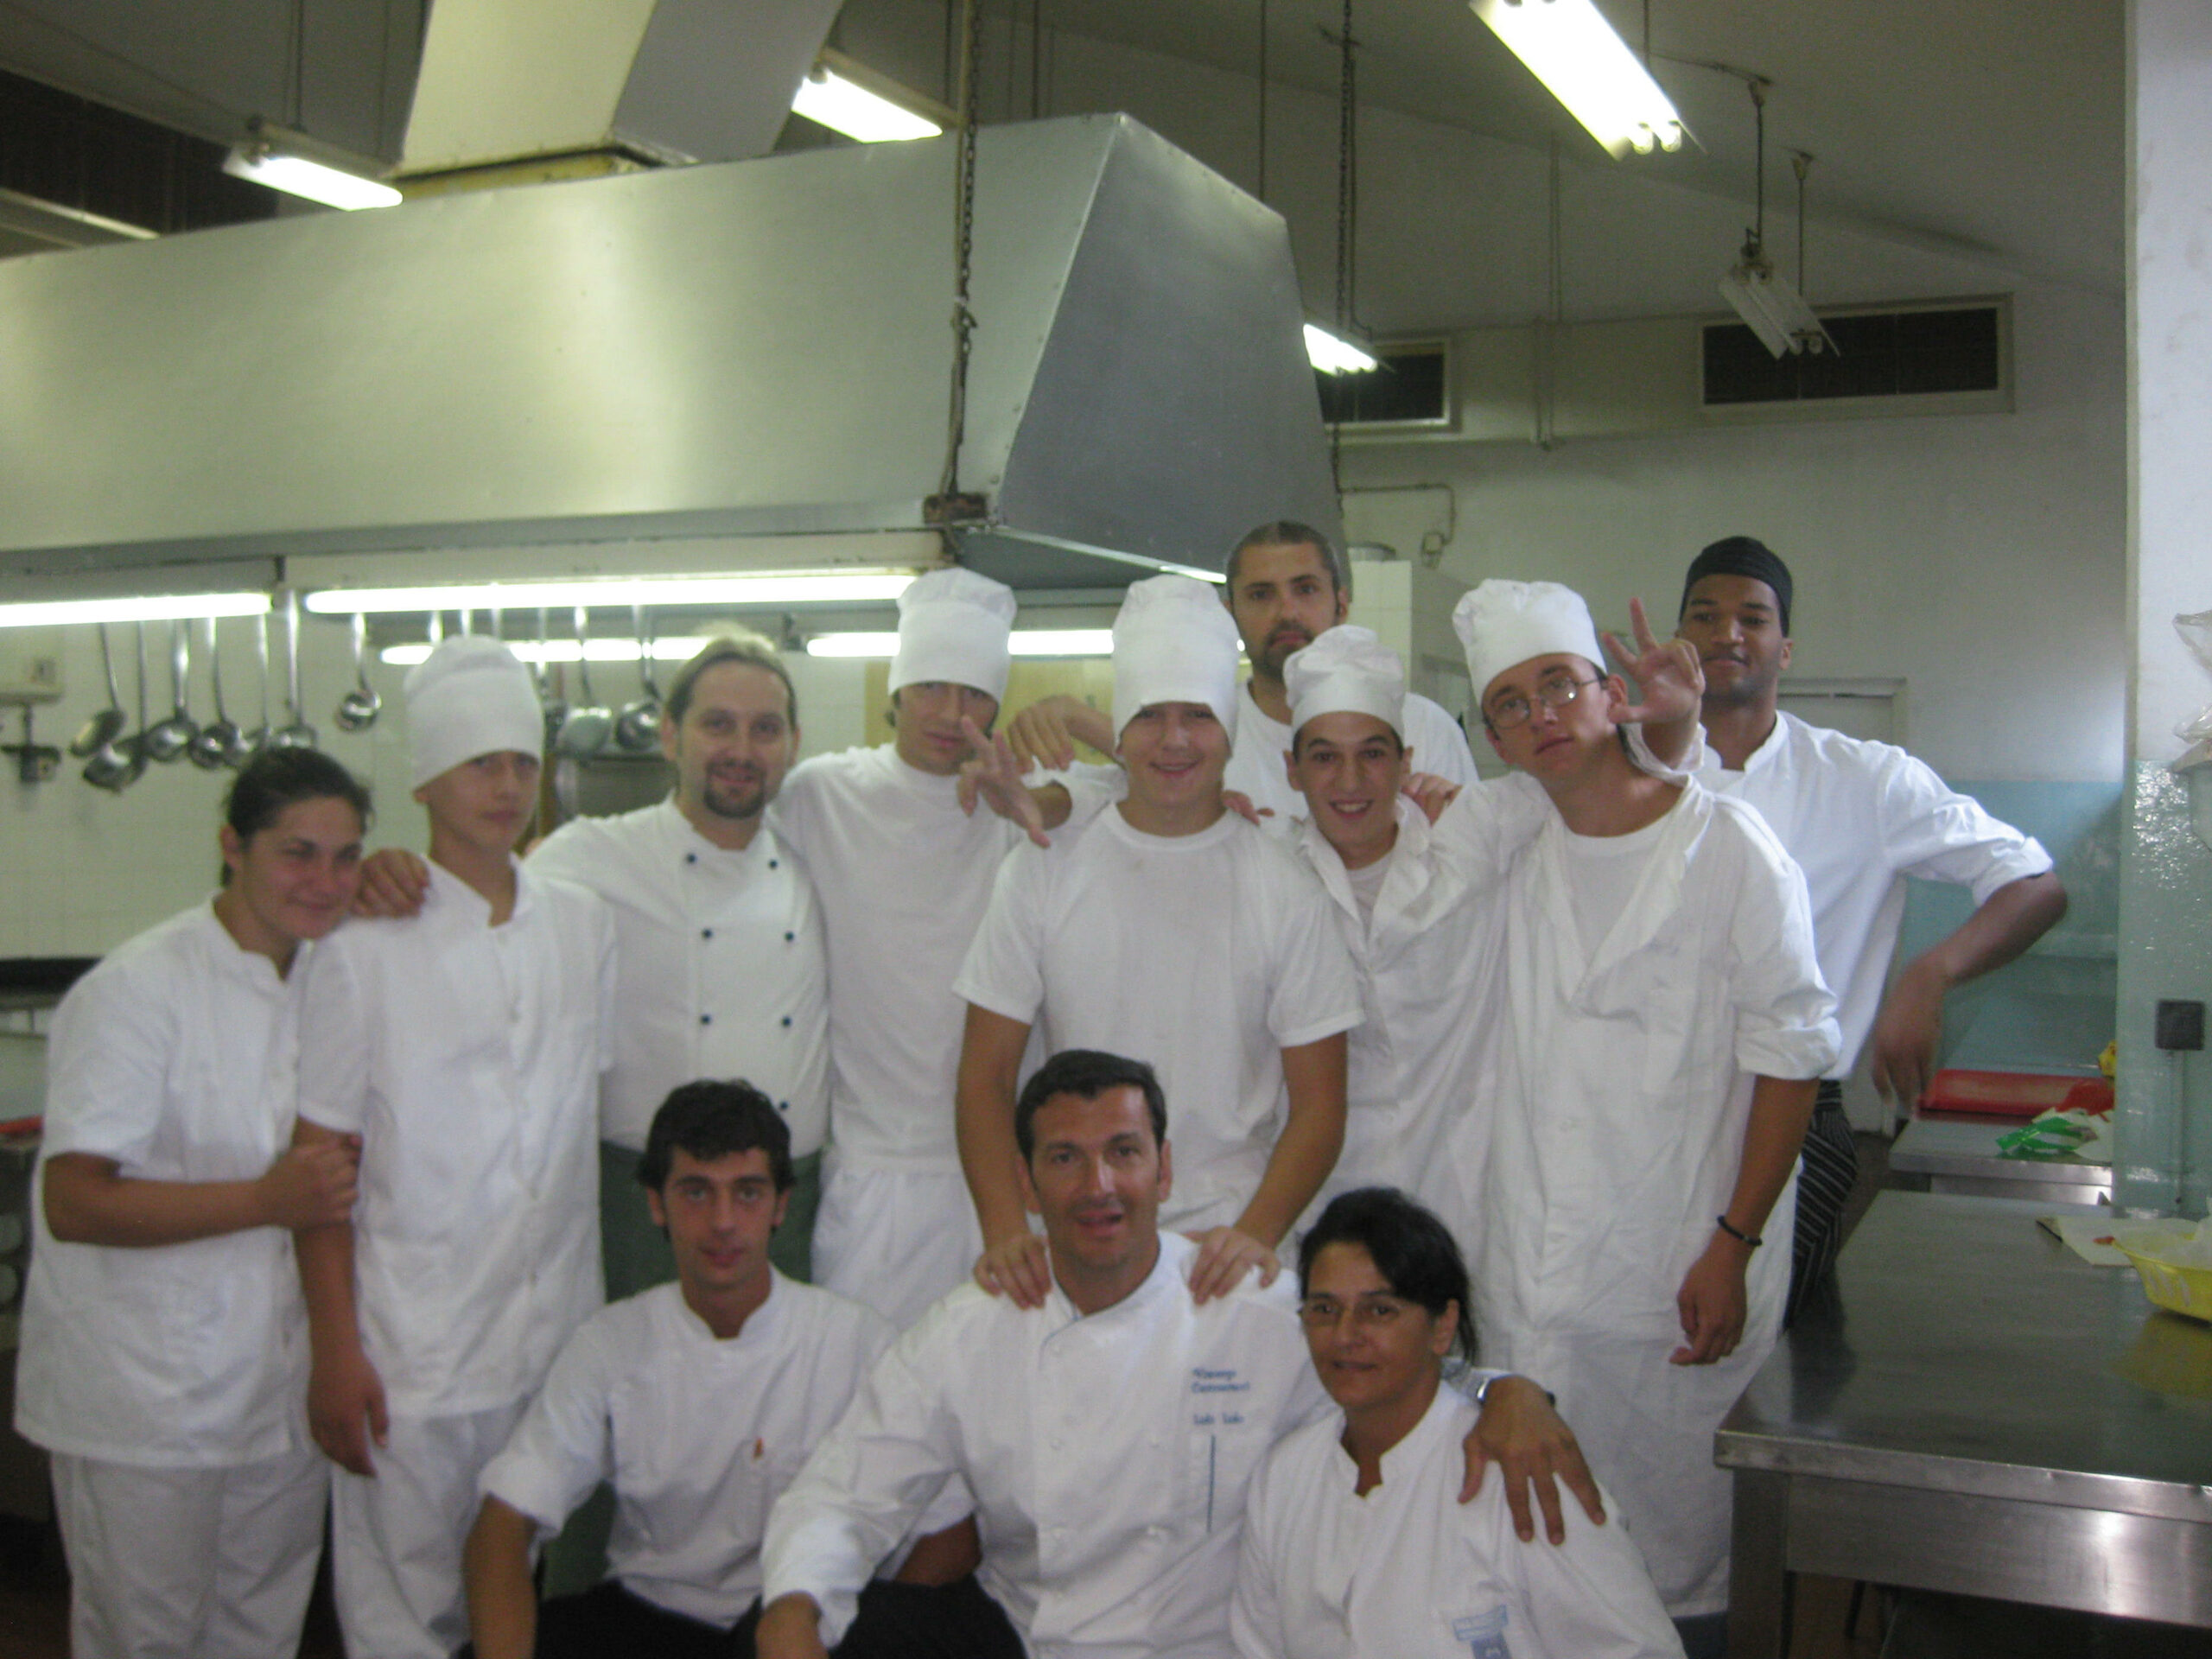 Goran Milic Culinary Academy